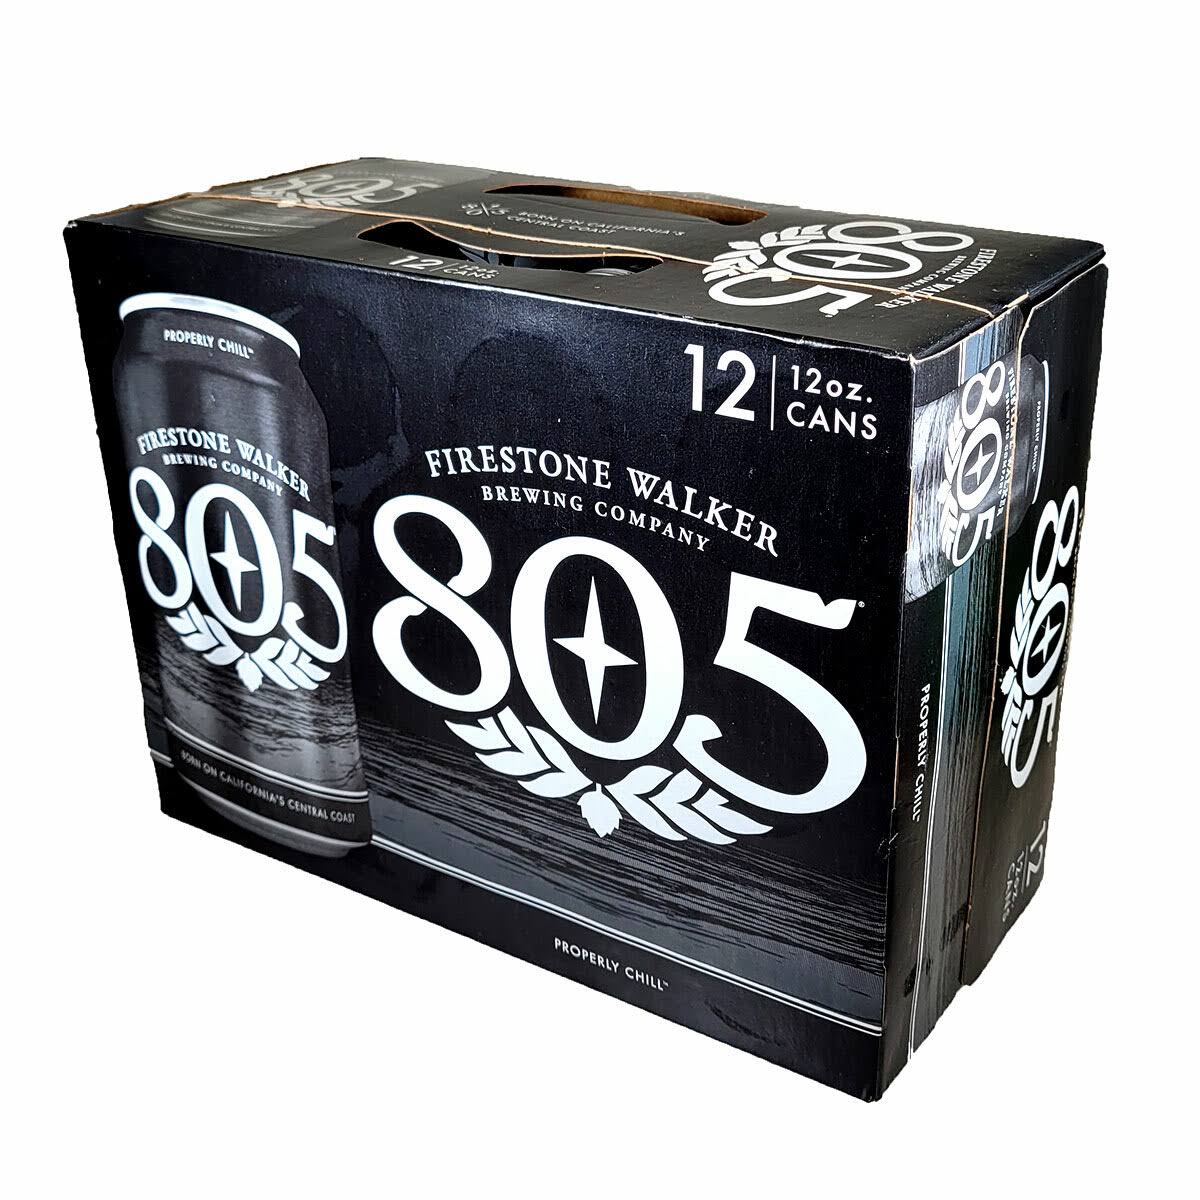 Firestone Walker Beer, 805, 12 Pack - 12 pack, 12 oz cans